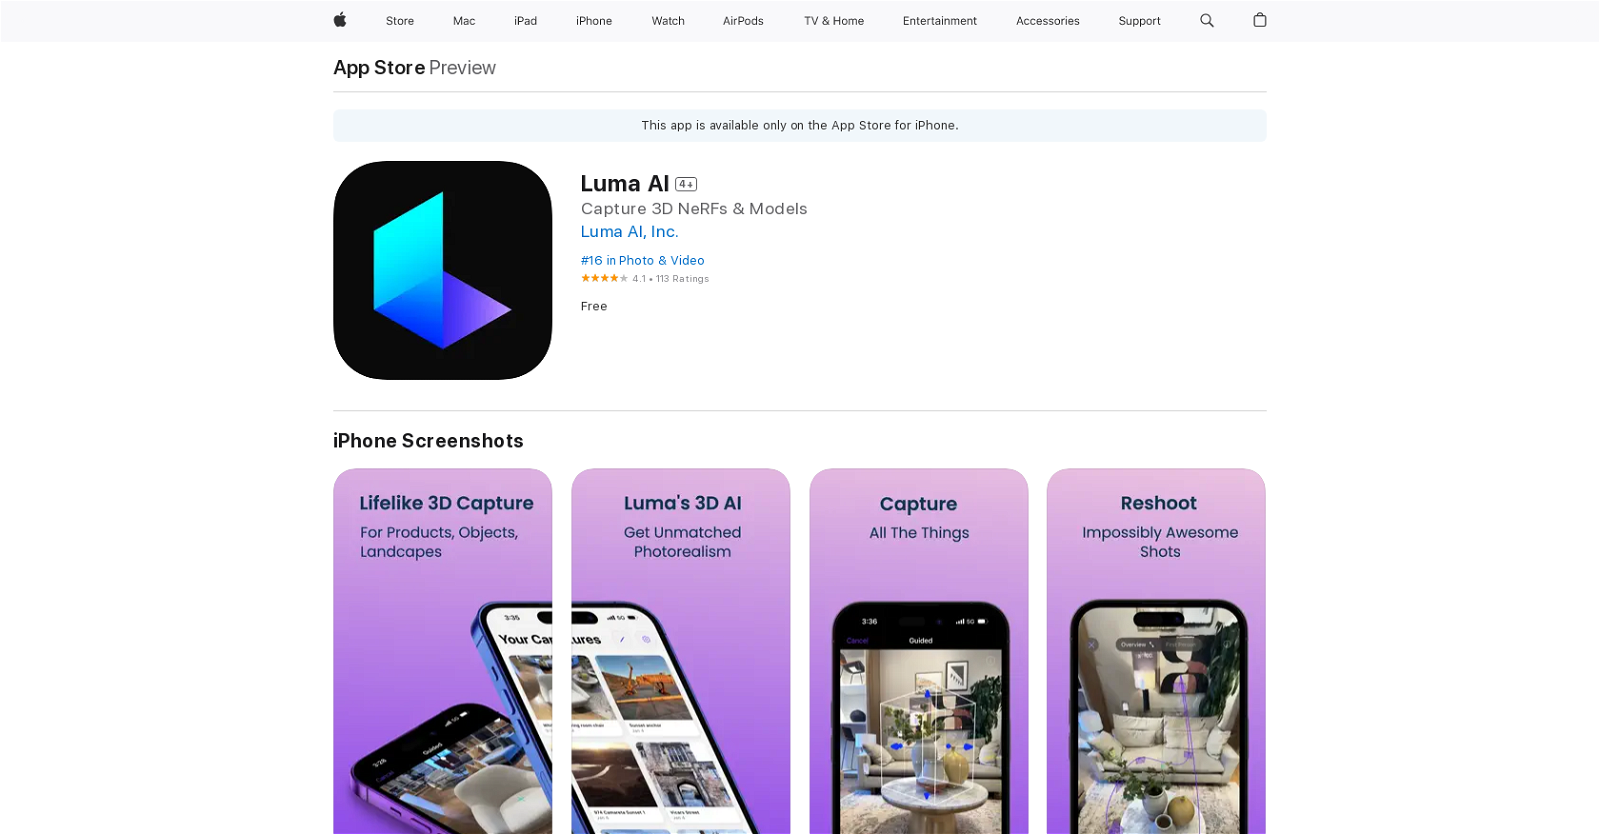 Luma AI – Download Luma AI APK For Android [FREE] 2023